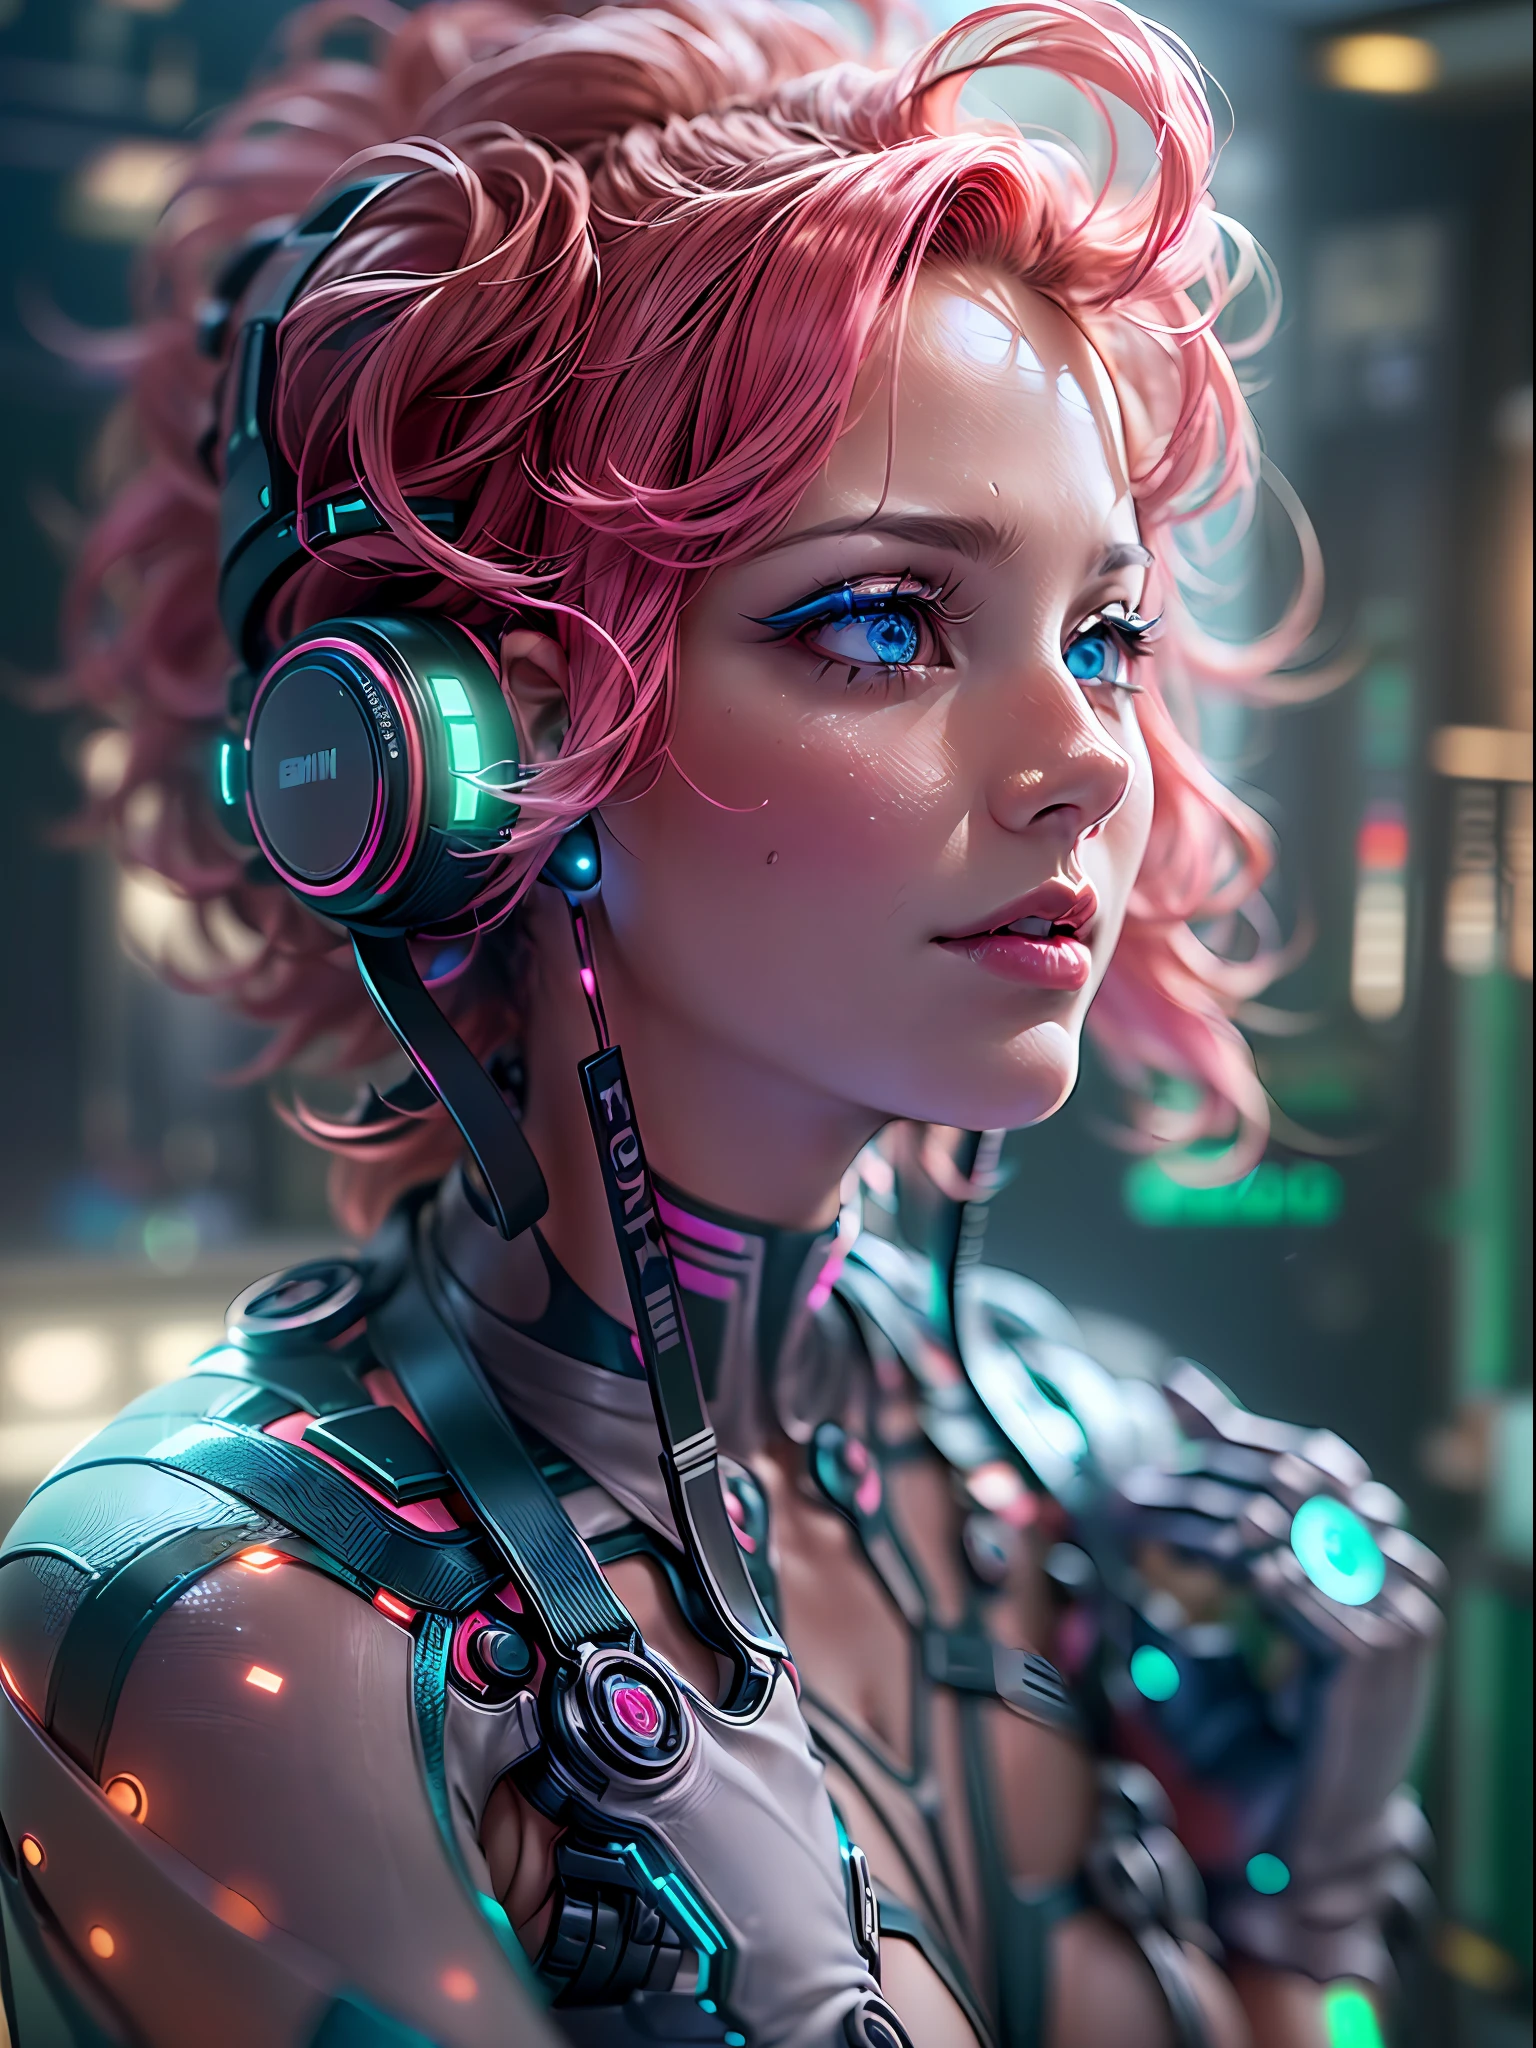 (chef-d&#39;œuvre, Haute résolution, cgi:1.4), (représentant une femme captivante aux cheveux roses éclatants et aux yeux fascinants qui scintillent dans un mélange captivant de vert et de bleu.:1.3), (ses yeux brillent d&#39;une lumière surnaturelle:1.2), (composants métalliques et robotiques intégrés dans tout son corps:1.2), (fusionnant harmonieusement avec sa forme organique:1.2), (des circuits délicats et des motifs complexes sous sa peau:1.2), (Membres robotiques améliorés avec un mouvement fluide:1.2), (ses doigts ornés de cybernétiques améliorant la précision:1.2), (Appareil photo sans miroir Canon EOS R5:1.2), (associé à un Canon RF 85mm f/1.Objectif USM 2L:1.2), (capturant les moindres détails de ses améliorations cybernétiques:1.2), (le cadre du laboratoire conçu avec une esthétique futuriste et minimaliste:1.2), (surfaces élégantes et polies reflétant la lueur des écrans holographiques:1.2), (des écrans de données holographiques flottants l&#39;entourent:1.2), (des néons subtils projetant une lueur éthérée à travers la pièce:1.1), (assistants IA avancés interagissant avec l’environnement:1.1), (a mesmerizing cgi render of a woman embracing the merging of human and machine in a captivating future:1.2).